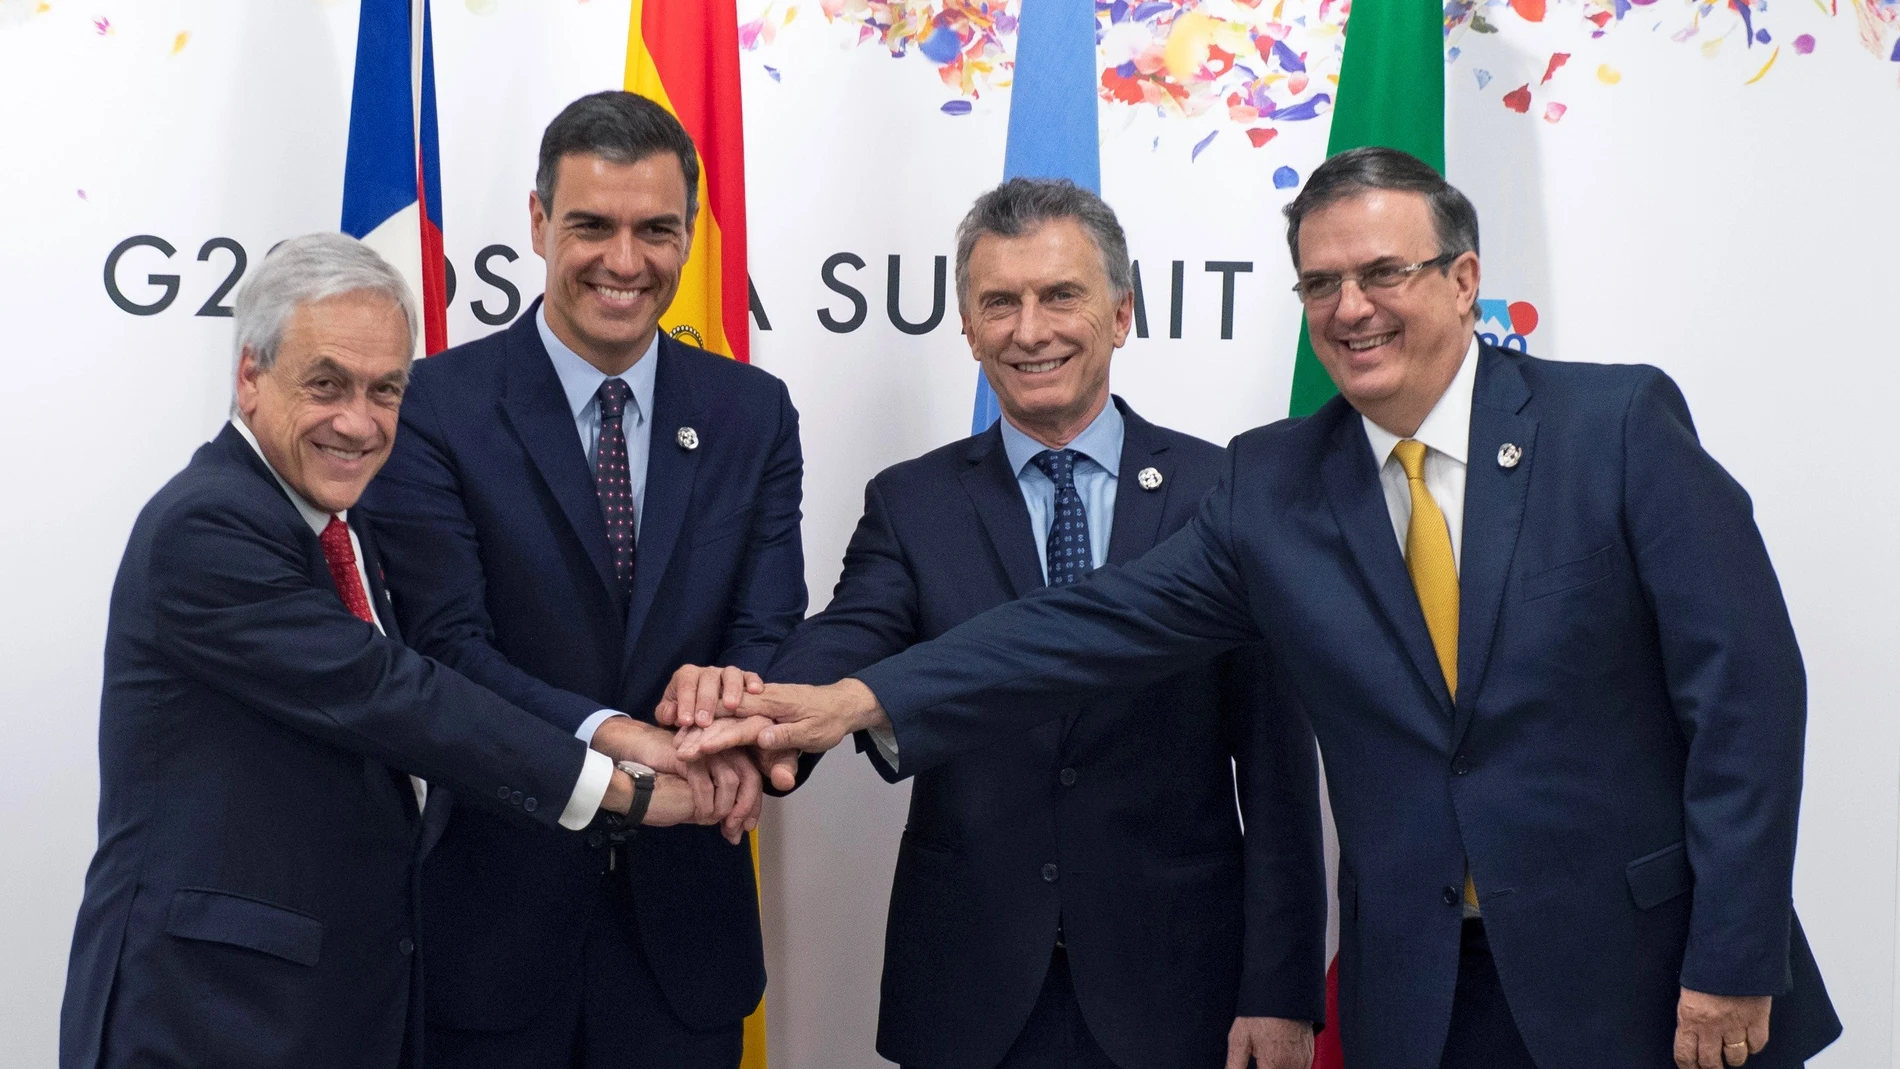 La UE y Mercosur celebran su acuerdo en un G20 marcado por las tensiones